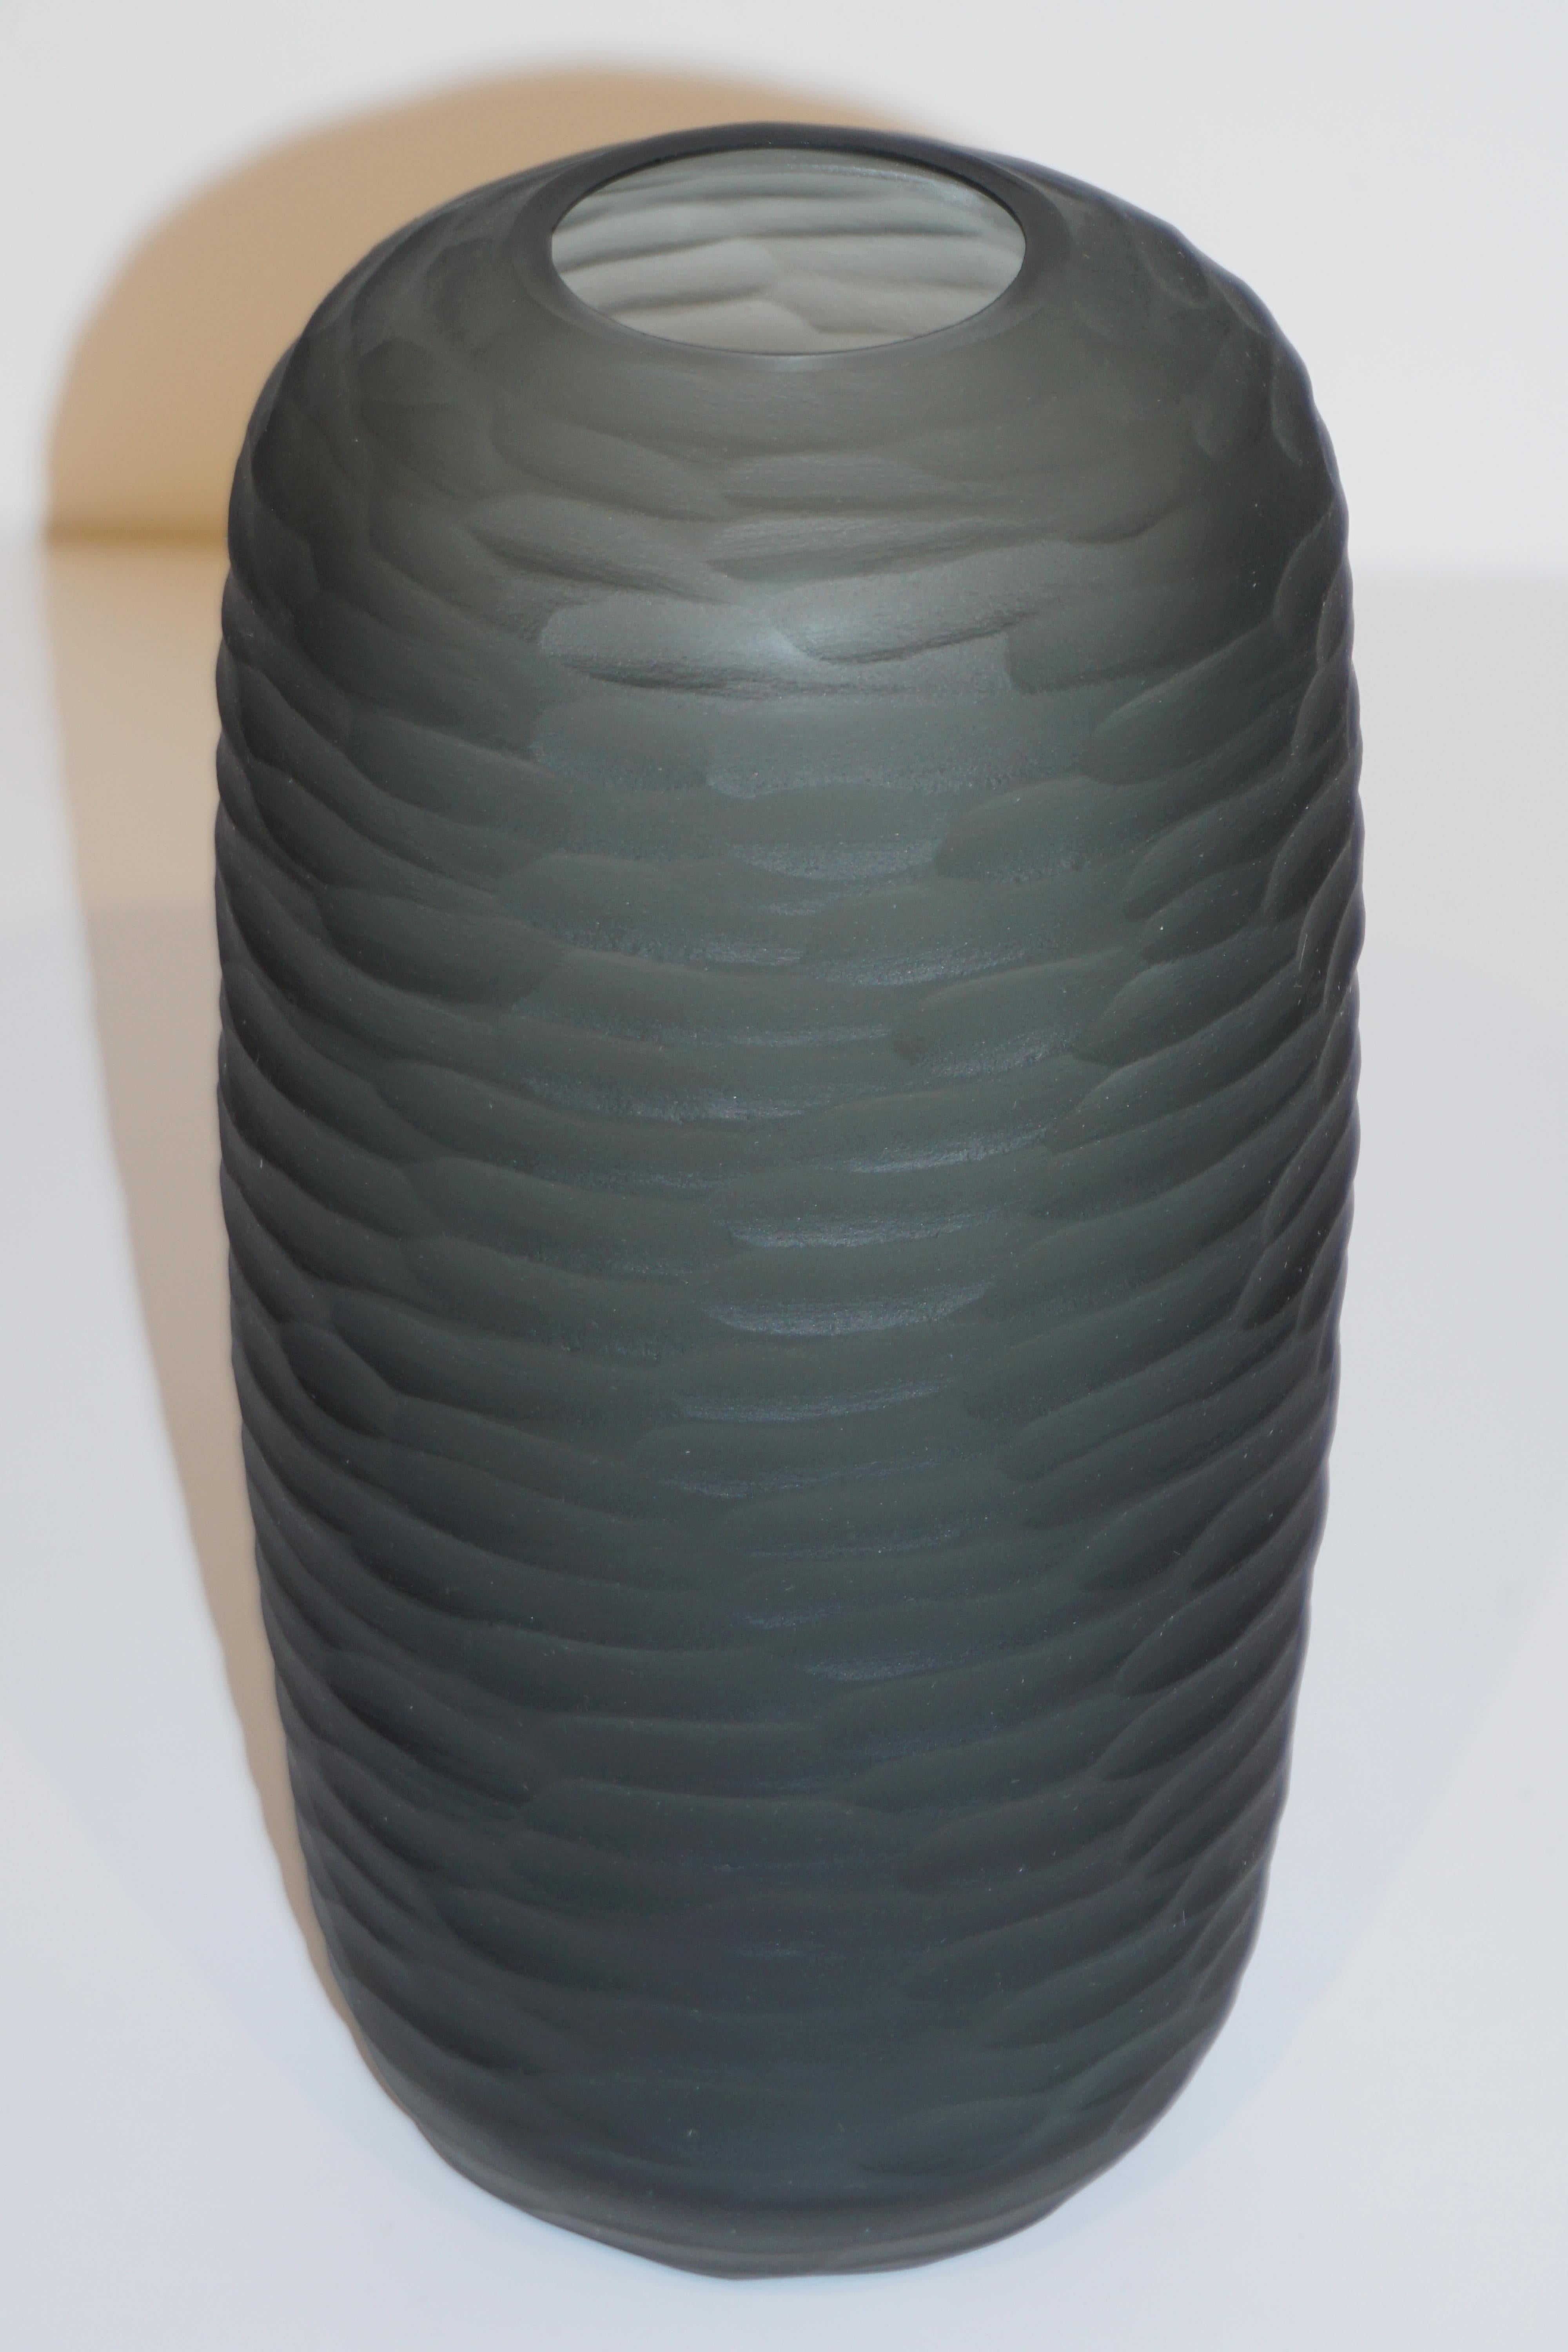 9 Stück mit individuellen handgefertigten Texturen erhältlich. Elegante venezianische Vase in organischer, eiförmiger Form, aus schickem rauchgrauem Murano-Glas, geblasen und signiert von Salviati, mit einer hochwertigen Dekoration in einem